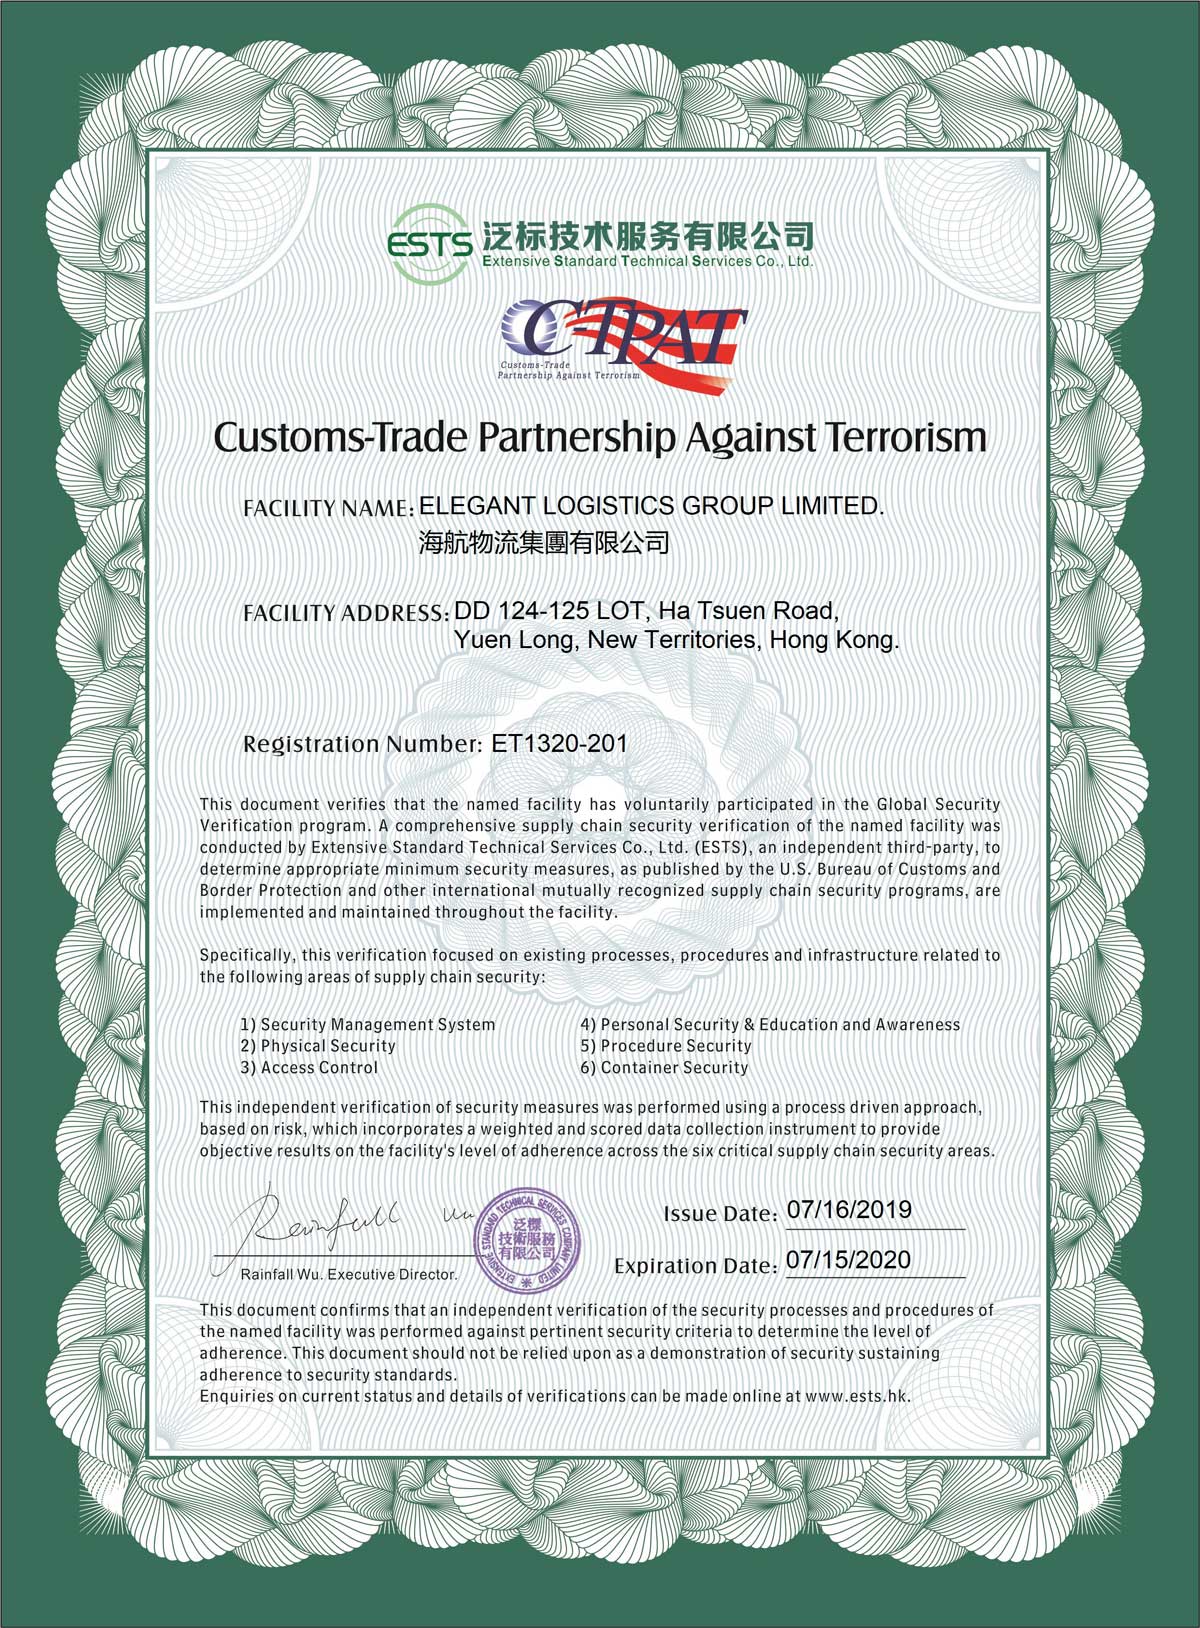 2019年7月考获美国海关商贸反恐联盟 (C-TPAT) 成员资格